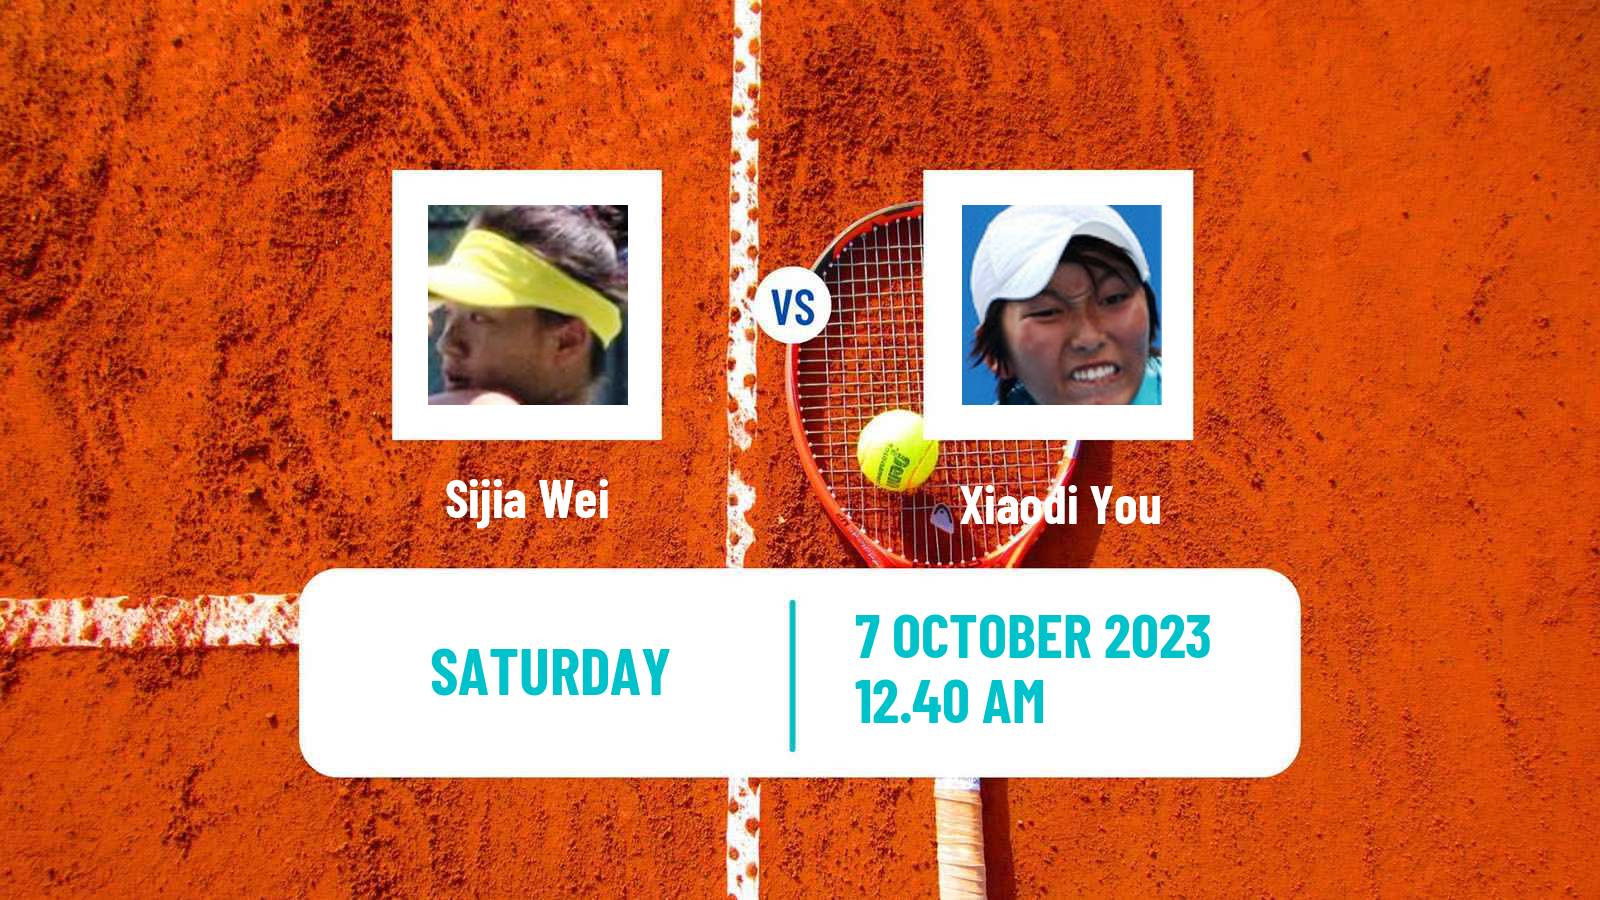 Tennis WTA Zhengzhou Sijia Wei - Xiaodi You